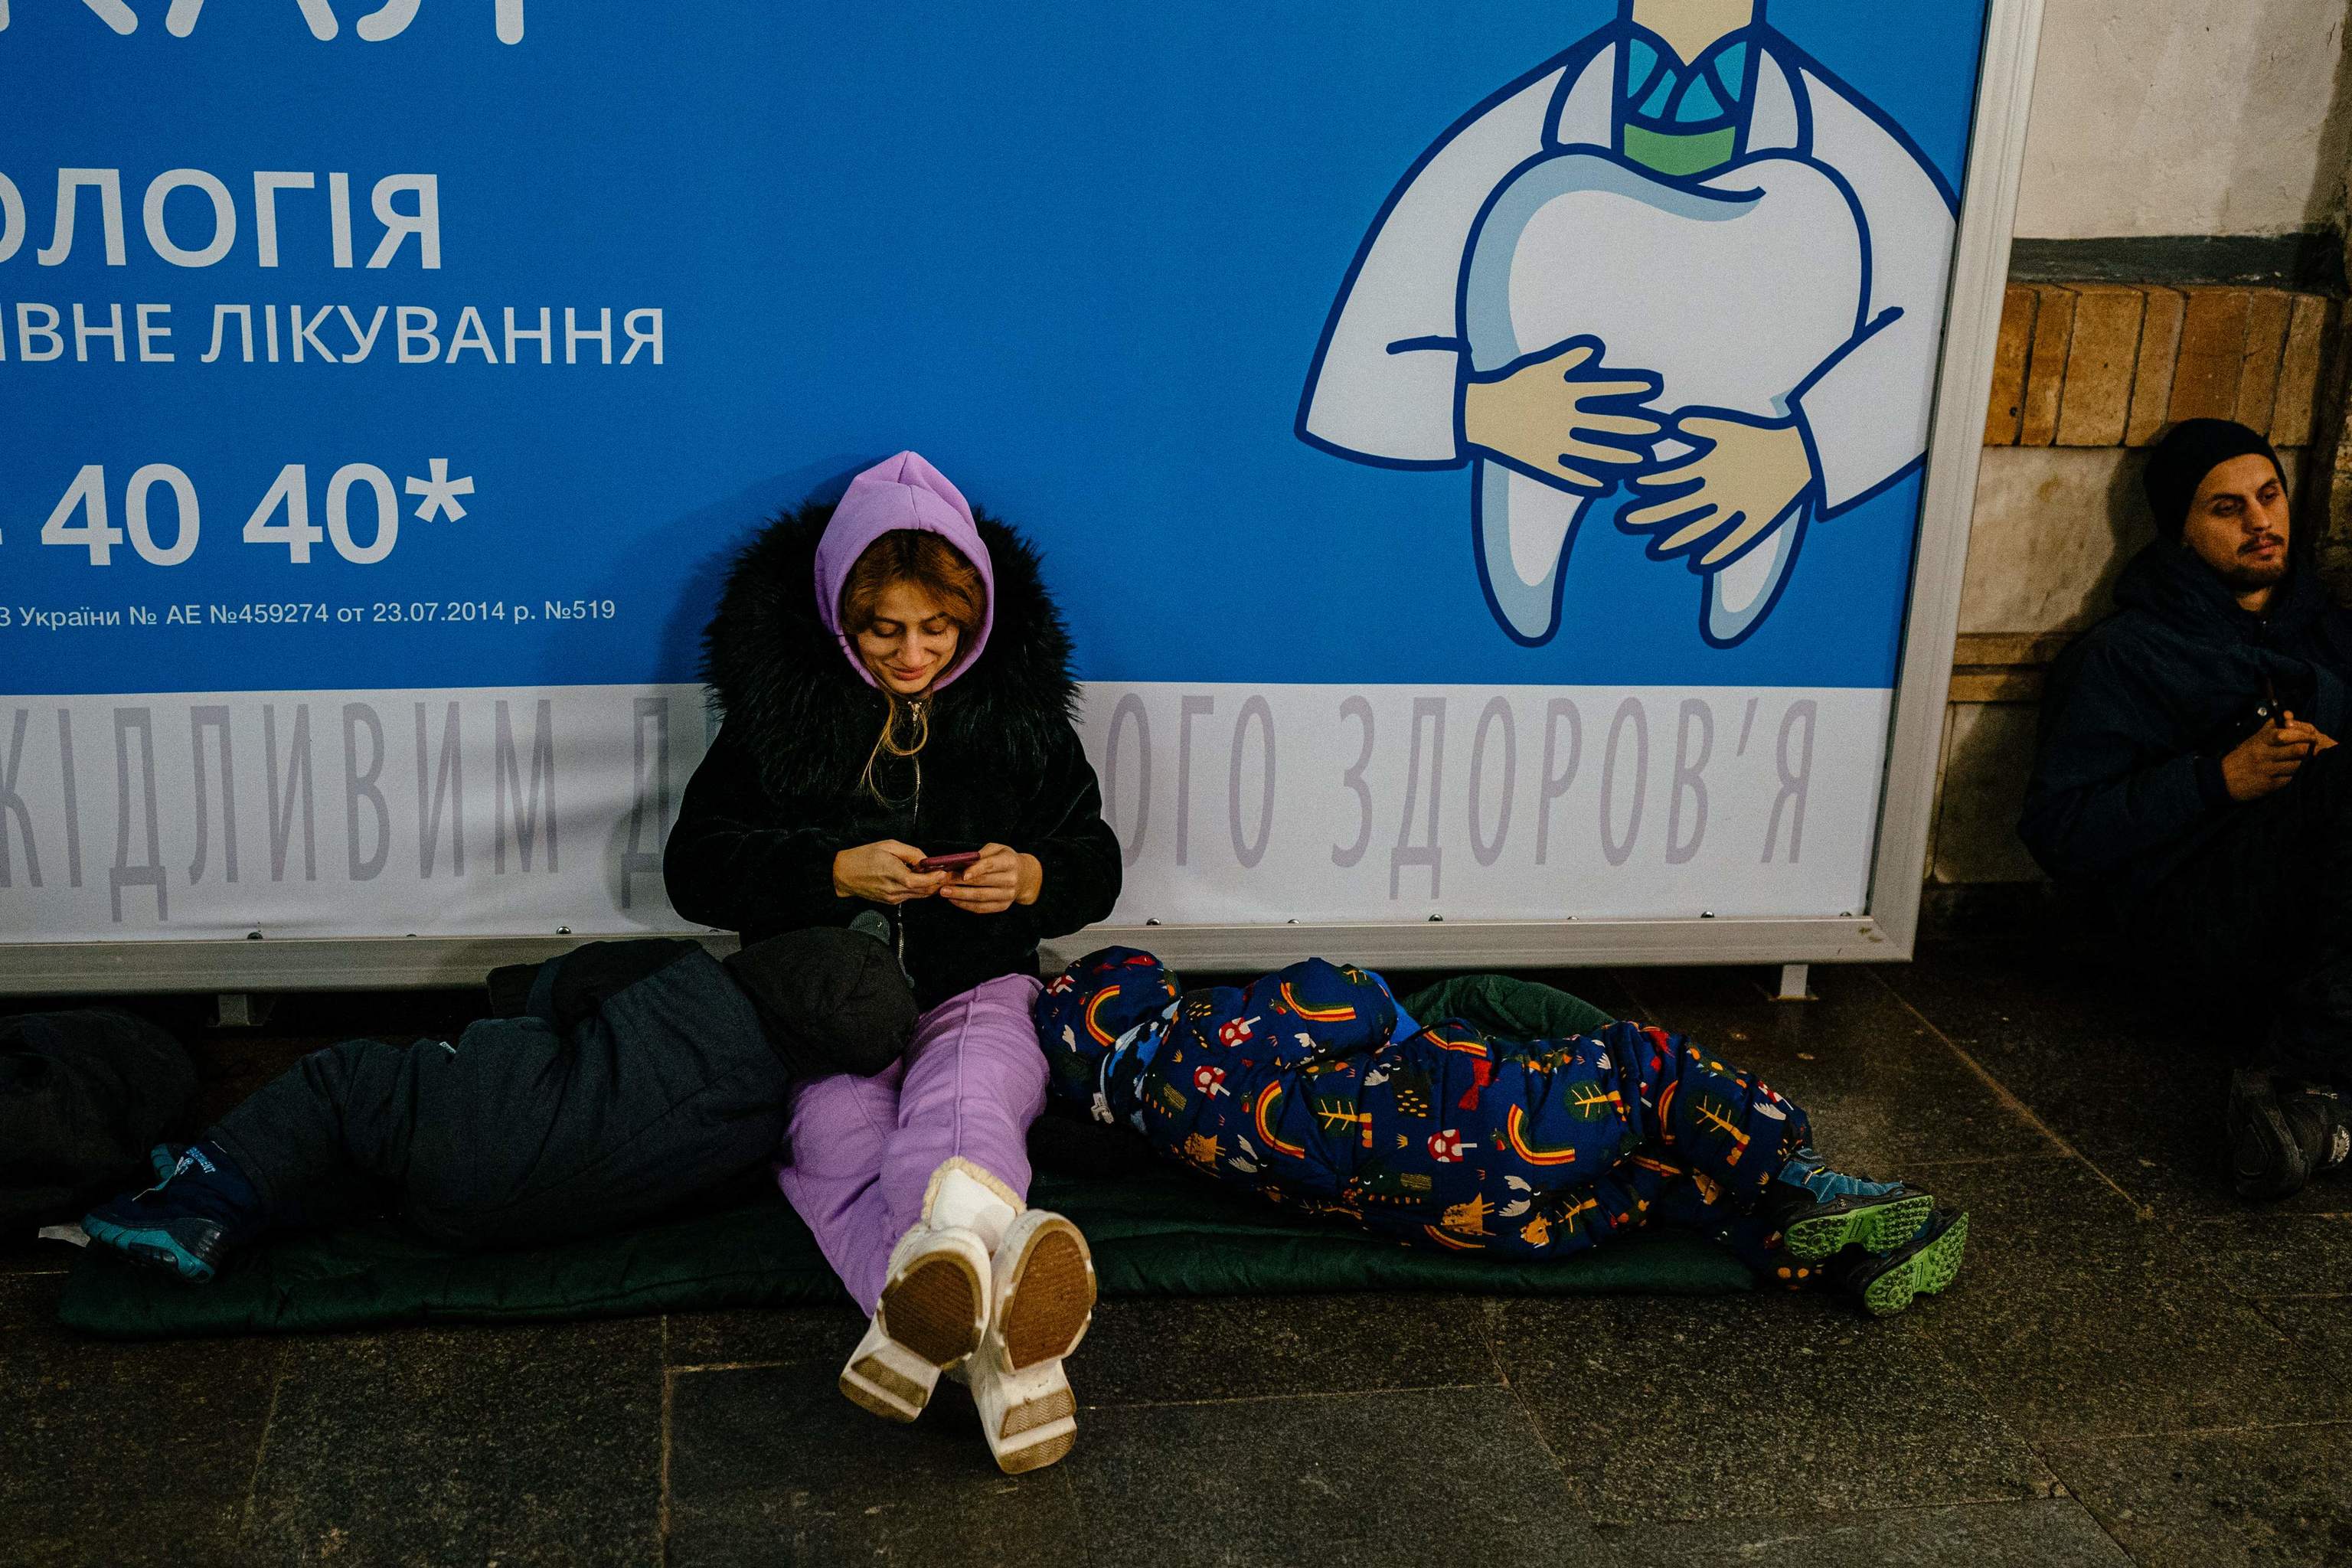 Una mujer y sus dos hijos se refugian en el interior de una estacin de metro durante una alerta antiarea en el centro de Kiev el 14 de diciembre de 2022, en medio de la invasin rusa de Ucrania. - El 14 de diciembre se escucharon explosiones en un barrio cntrico de la capital ucraniana, Kiev, segn declar el alcalde Vitali Klitschko, tras lo que parece haber sido un ataque con drones.